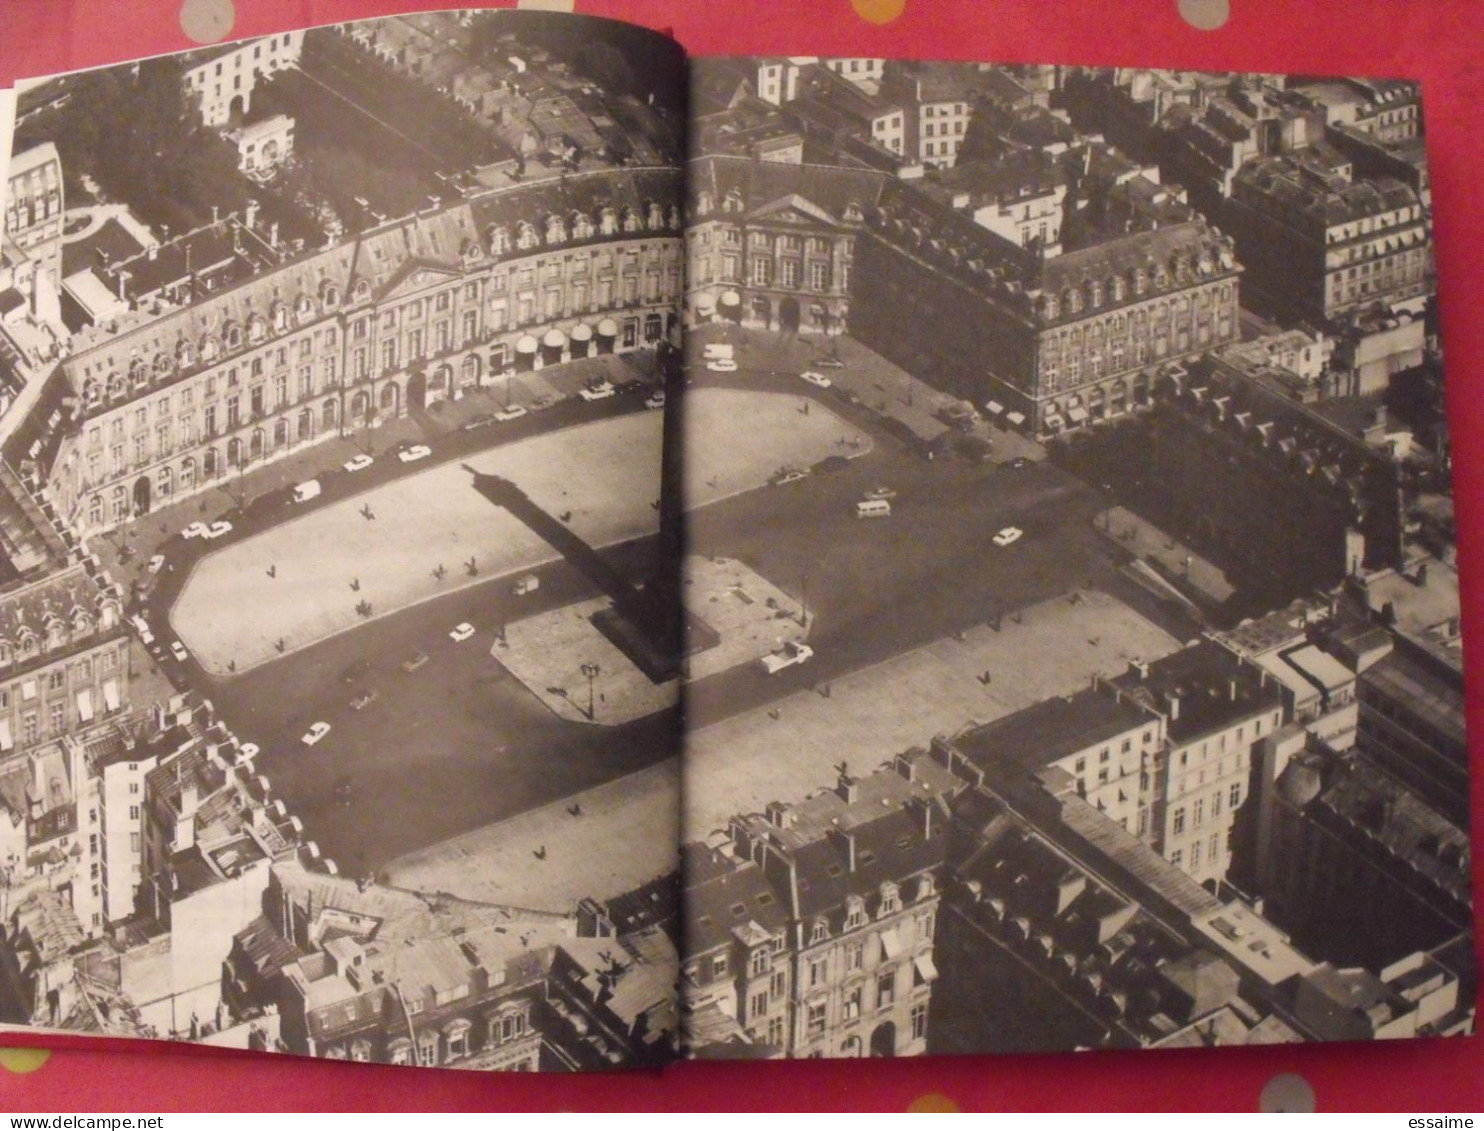 La place Vendôme. F de Saint Simon. éd. Vendôme 1982. cartonné relié pleine toile. bien illustré